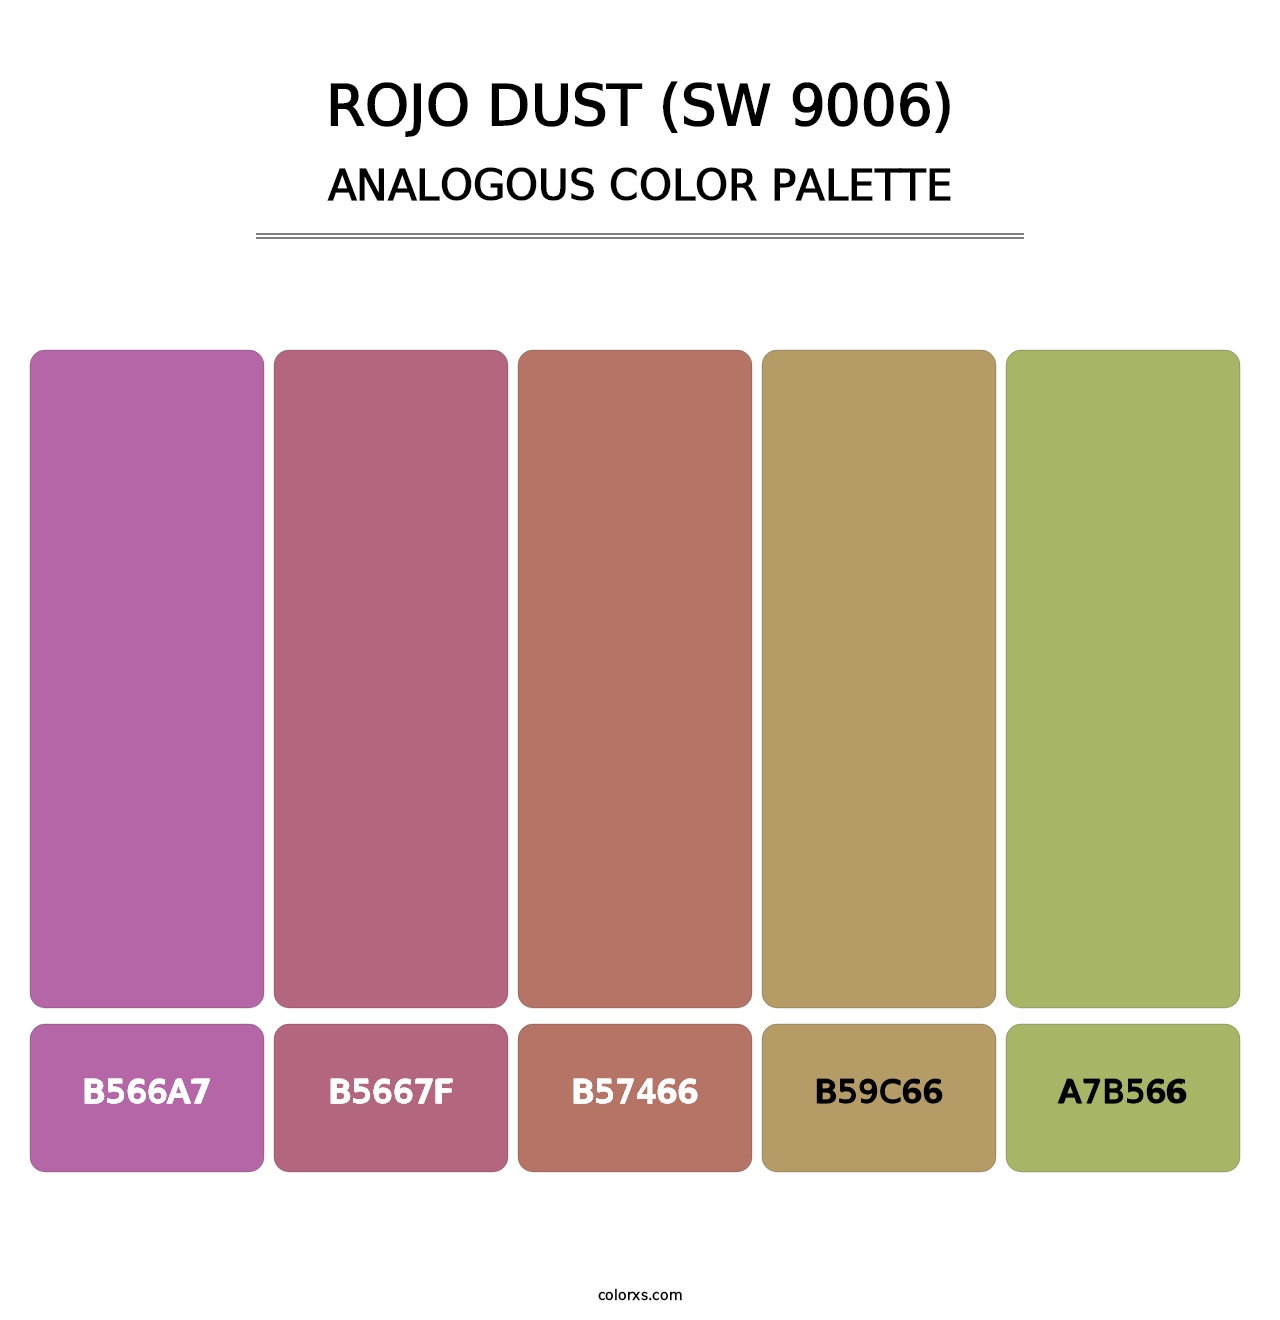 Rojo Dust (SW 9006) - Analogous Color Palette